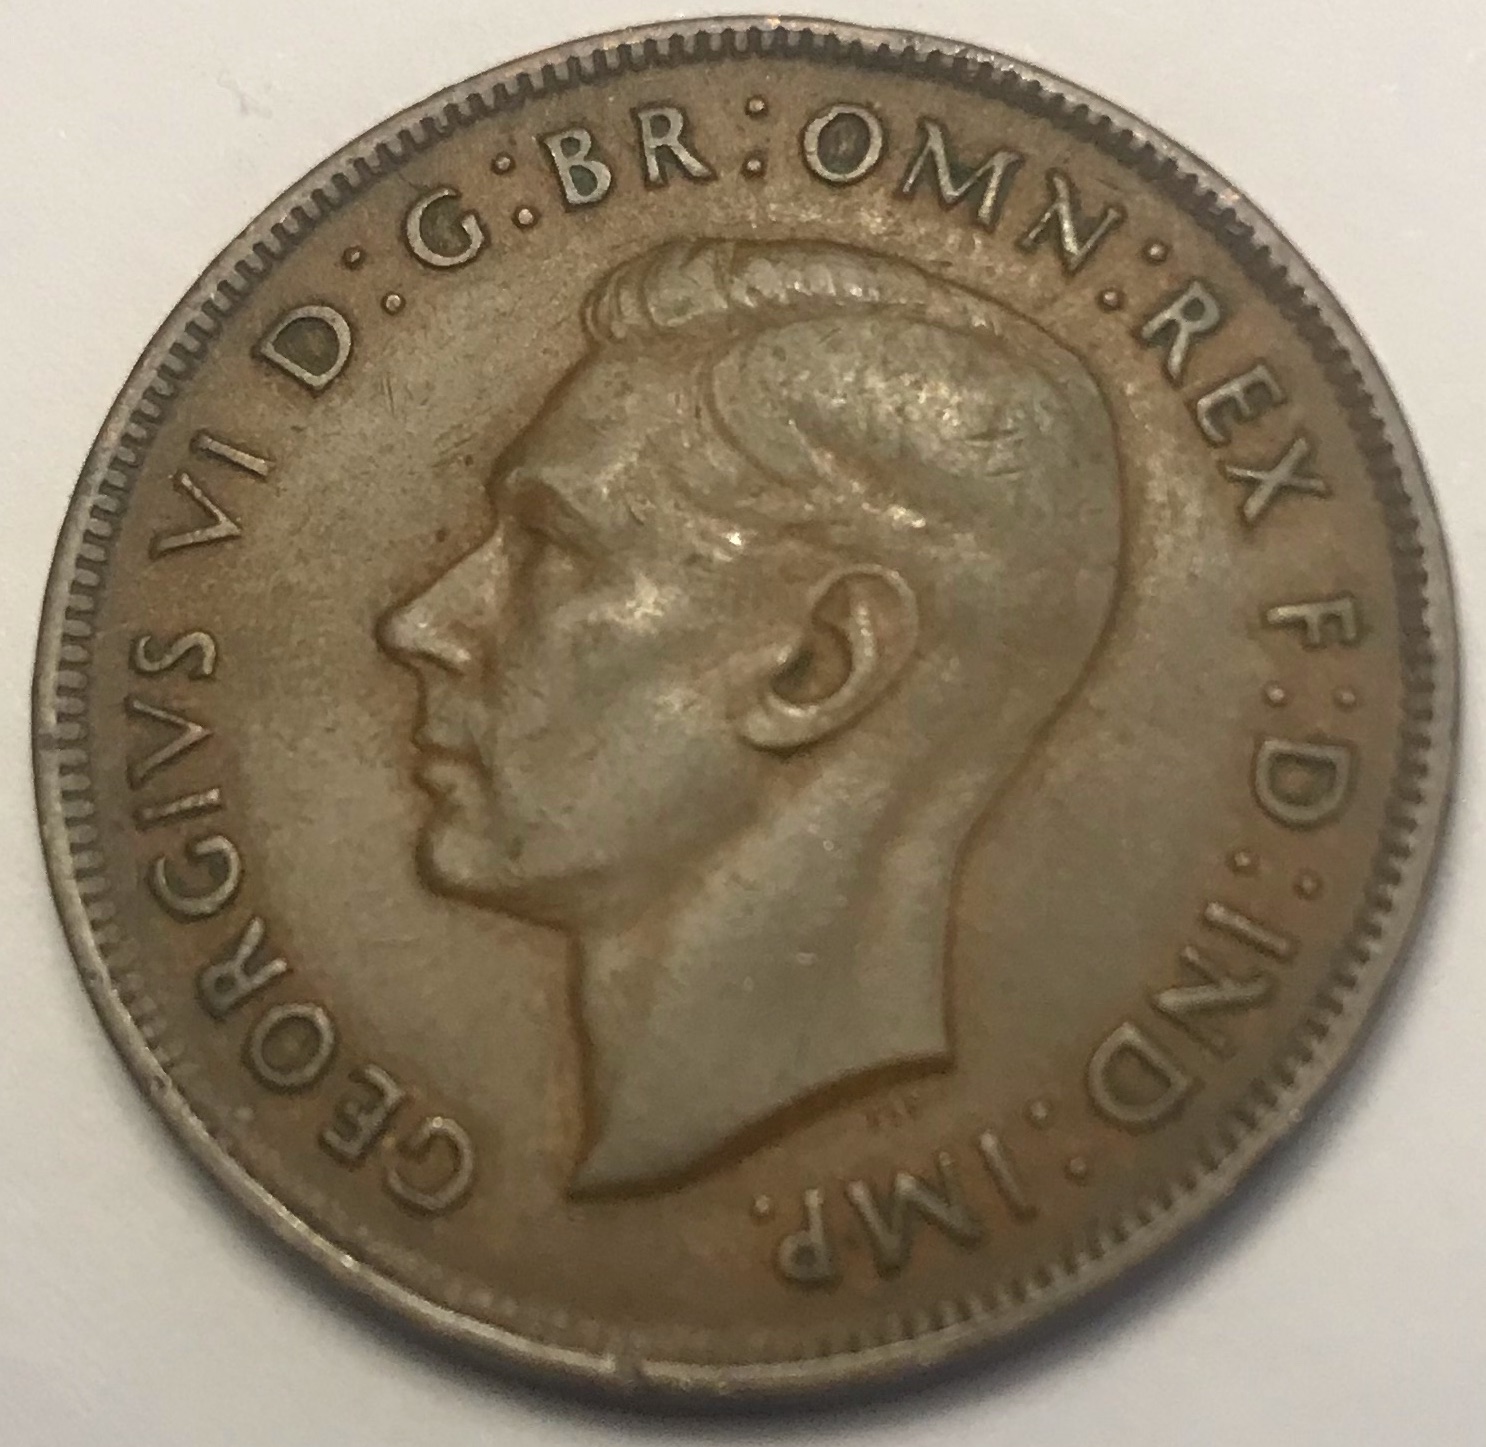 1938 Australian Penny Obverse.jpg